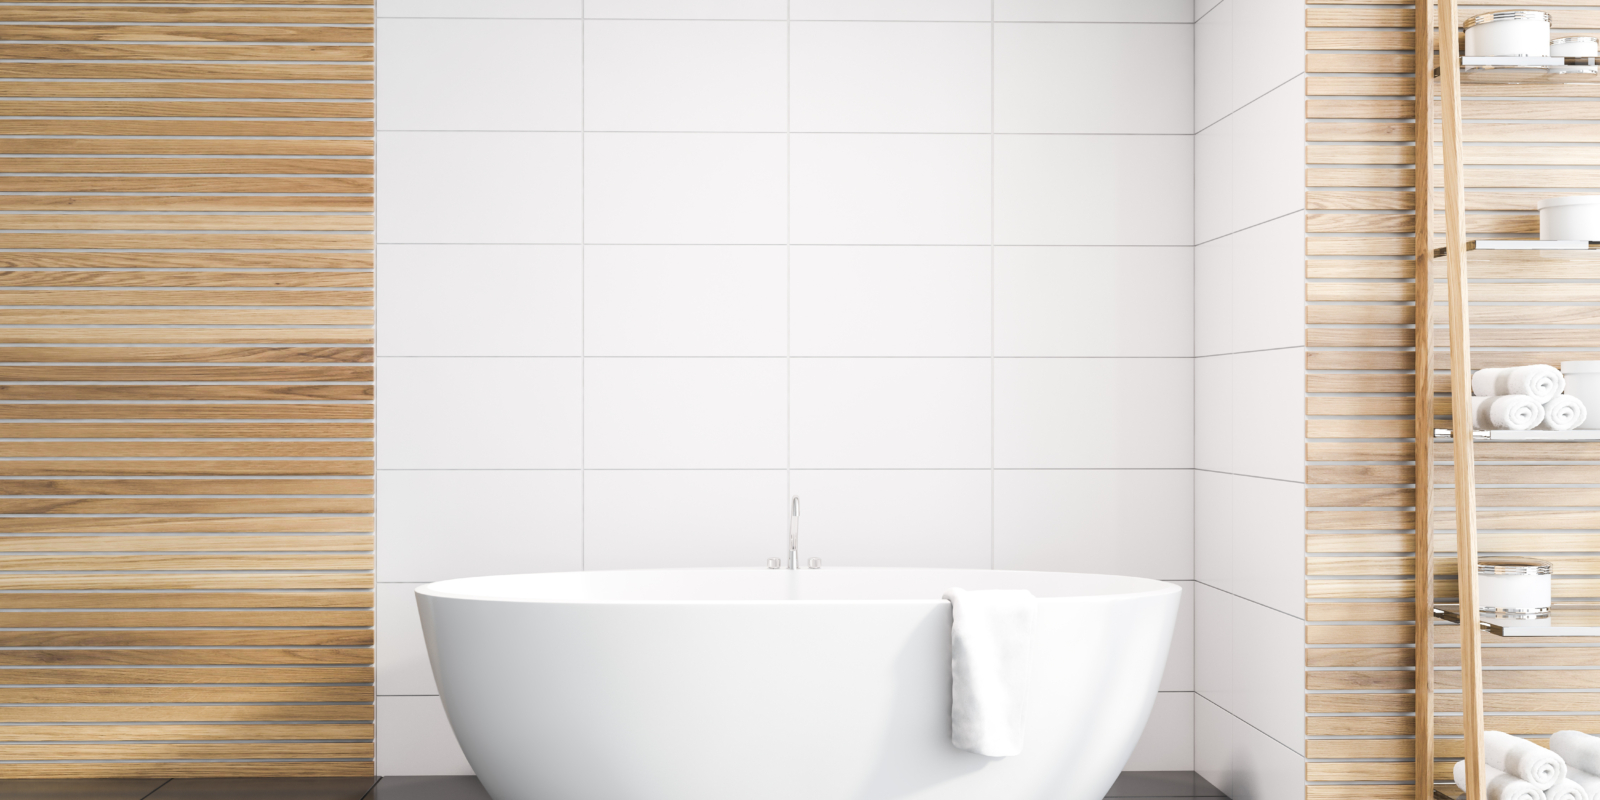 Stylisches Badezimmer, frei stehende ovale Badewanne, weiße Fliesen und Holzverkleidung